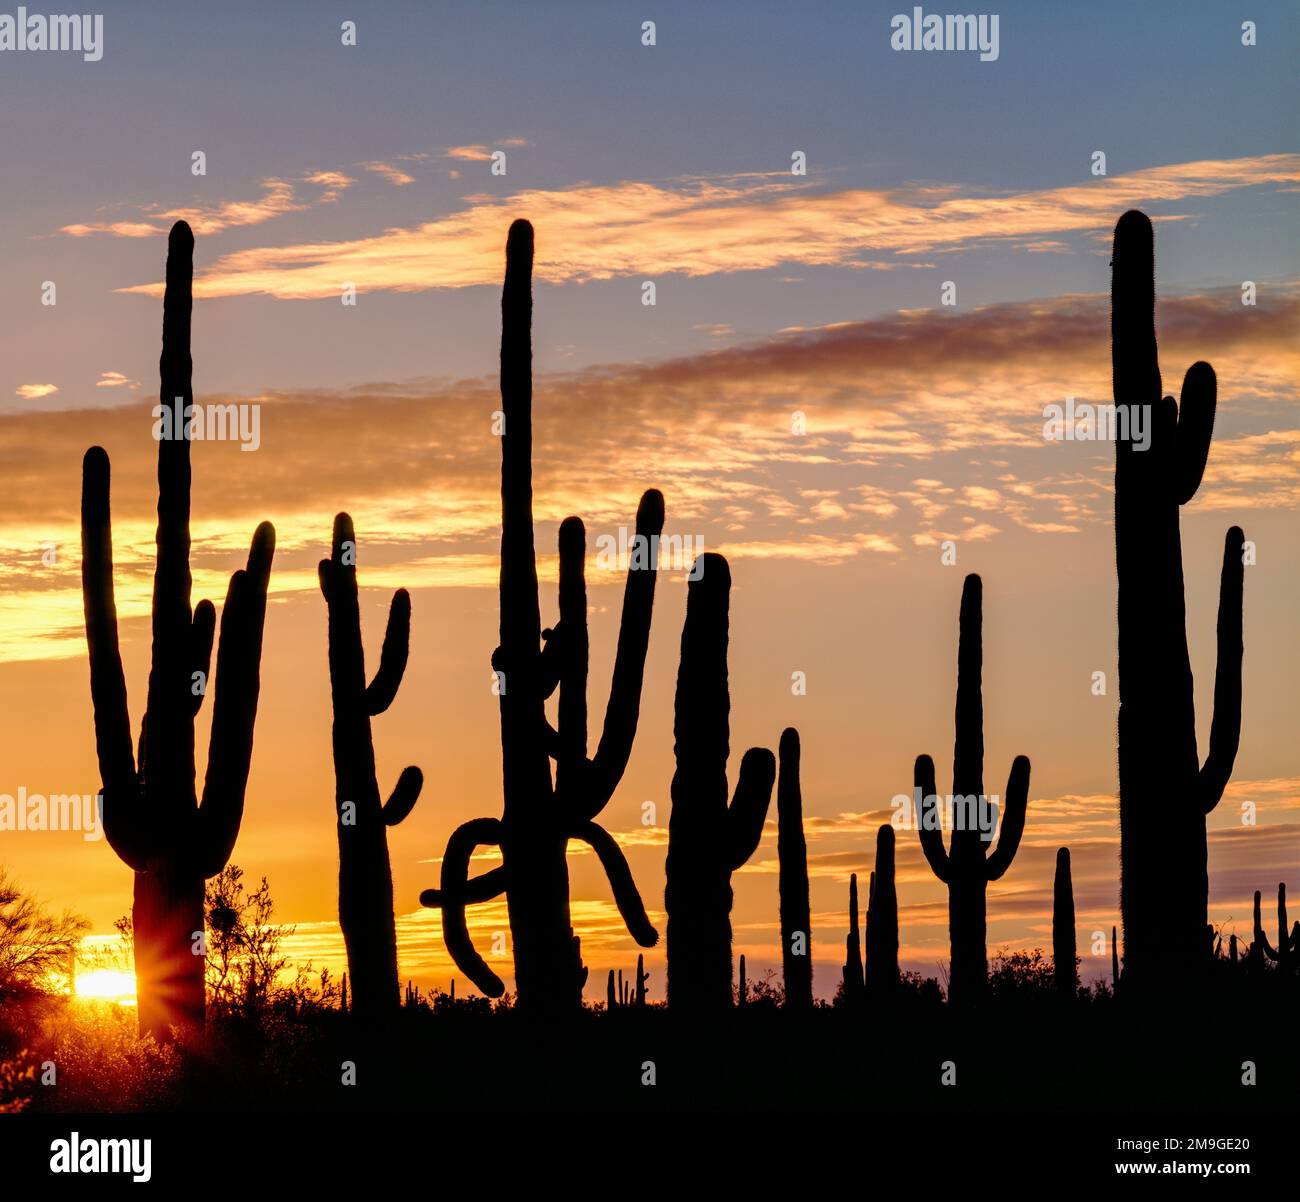 Silhouetted saguaro cactus (Carnegiea gigantea) dans le désert au coucher du soleil, Sonoran Desert National Monument, Arizona, Etats-Unis Banque D'Images